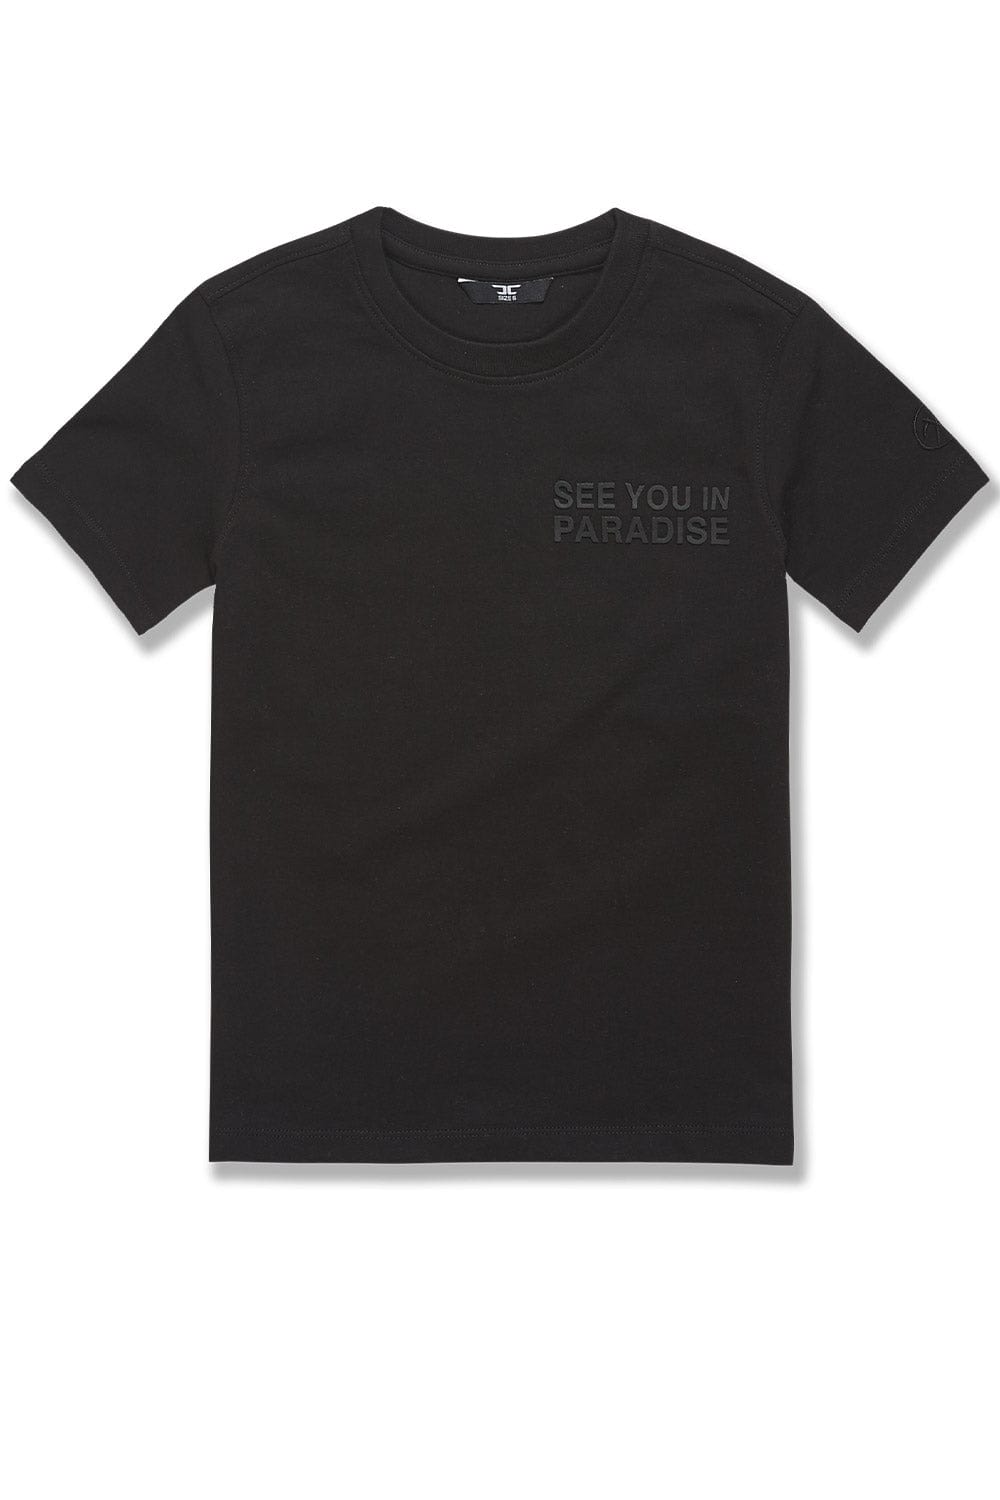 JC Kids Kids Paradise Tonal T-Shirt (Black) 2 / Black